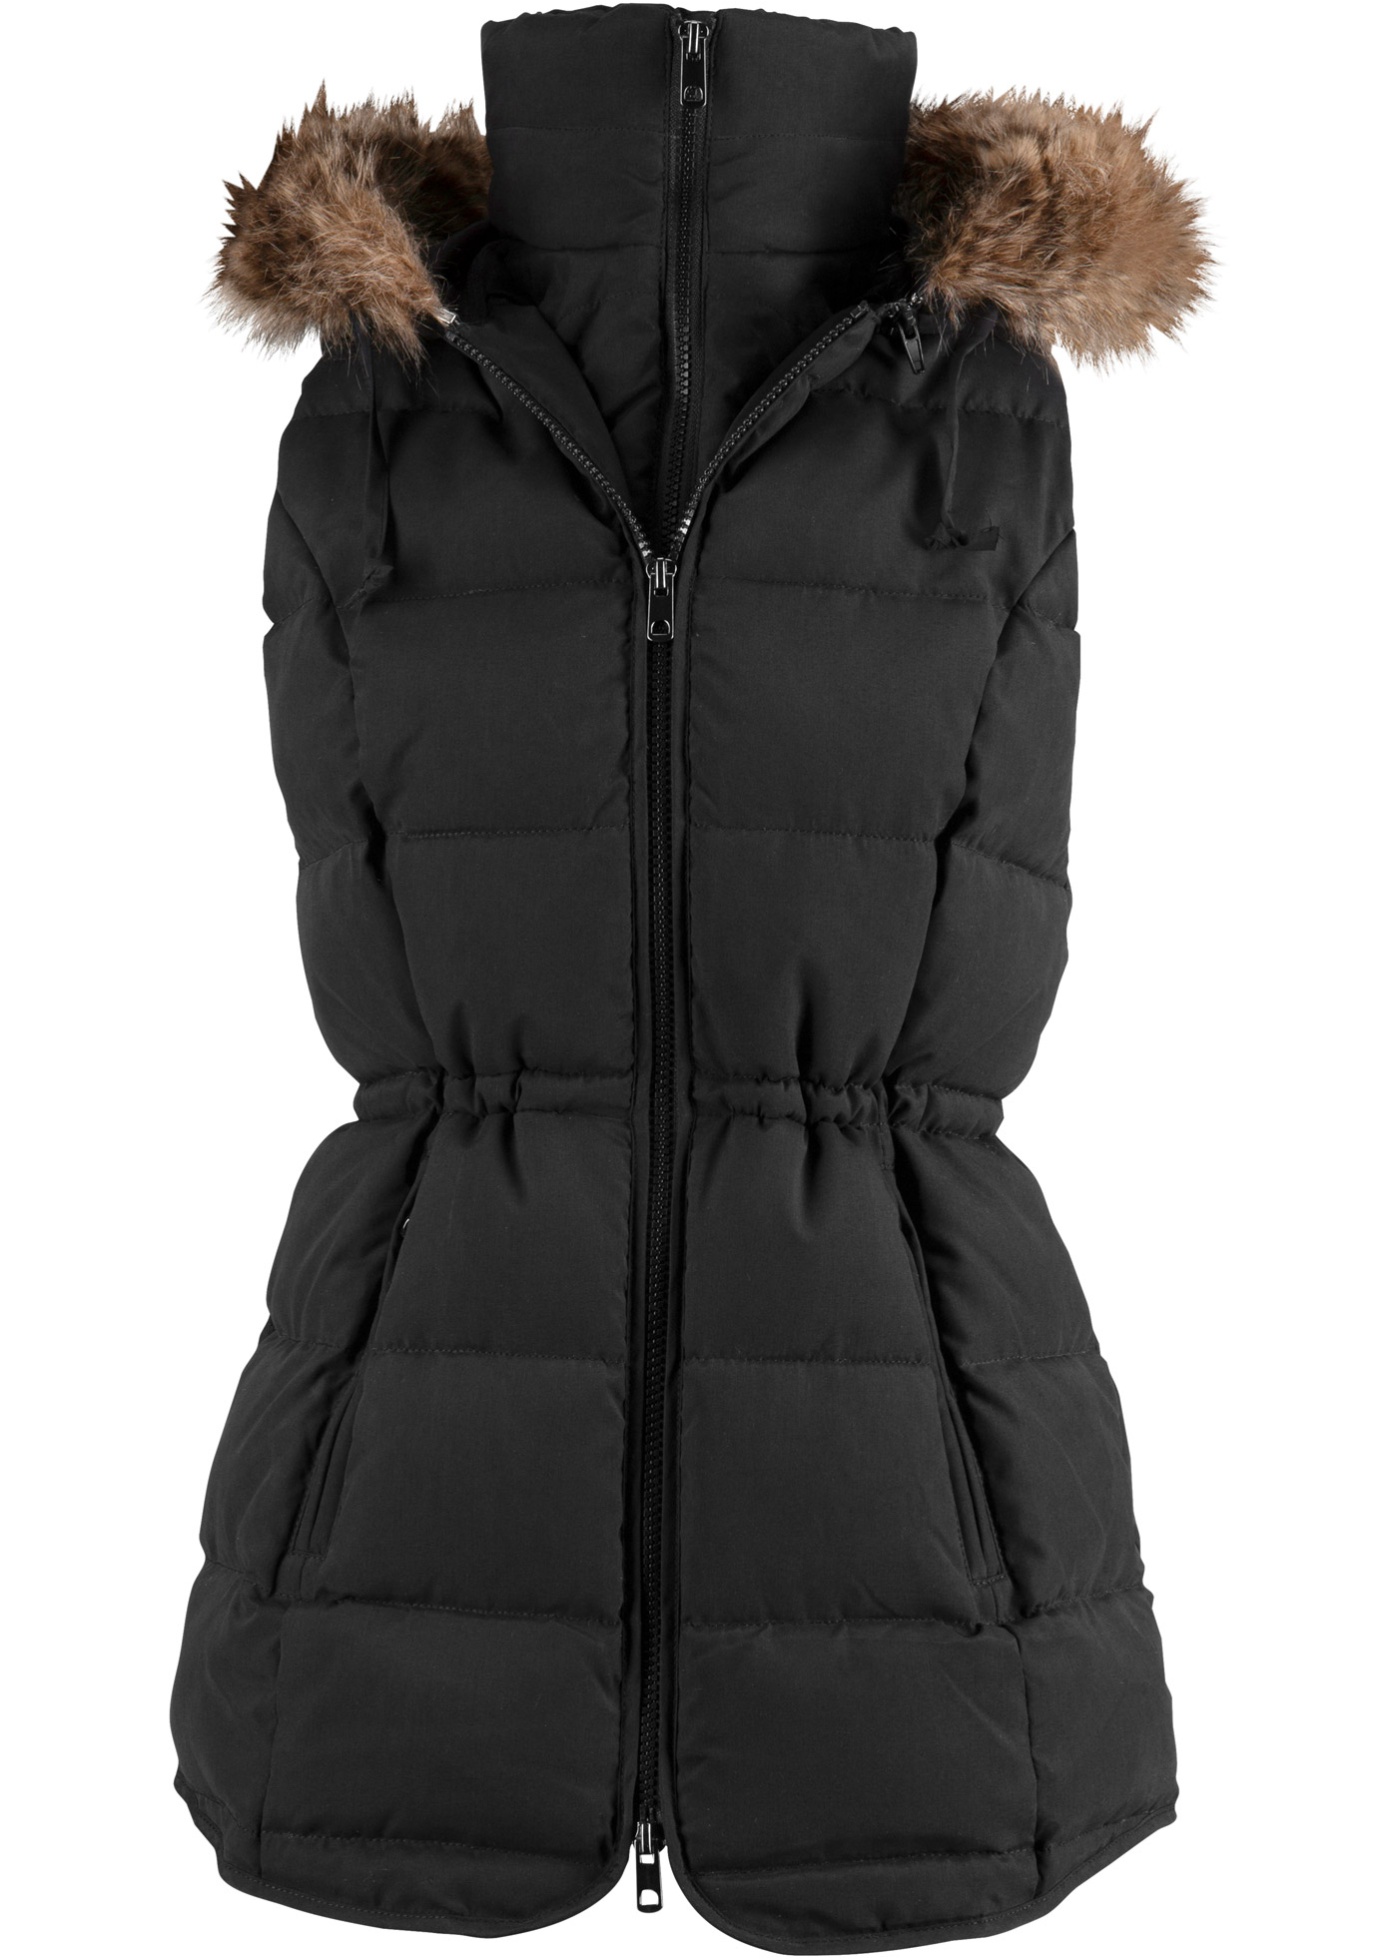 Outdoorová vesta s kapucí, ve dvouvrstvém vzhledu